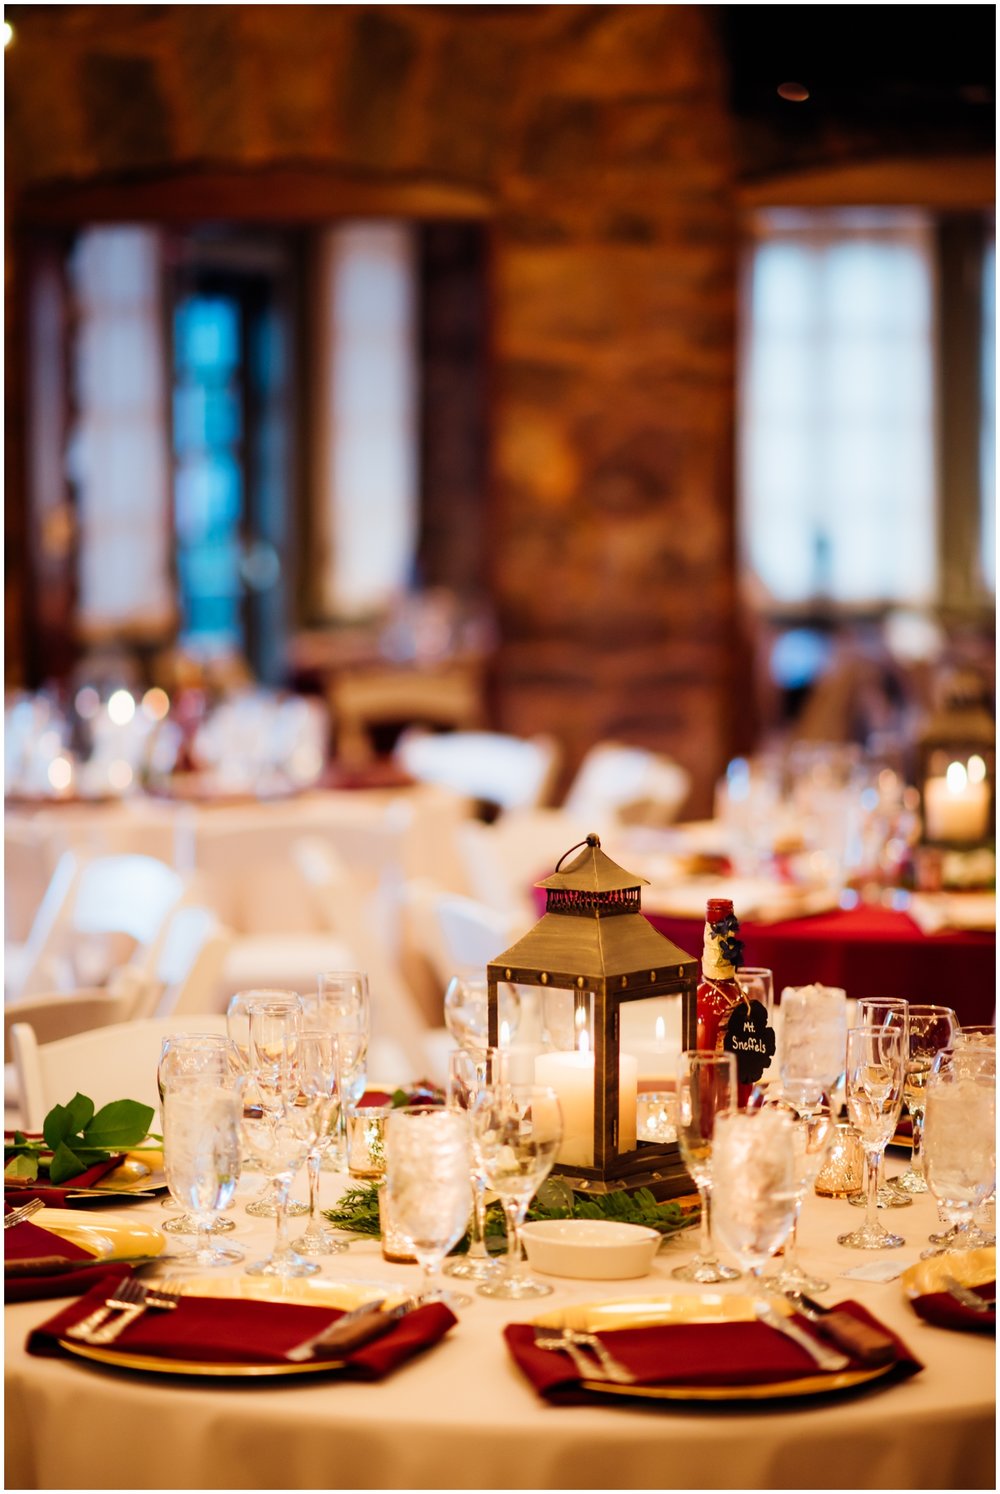  wedding tablescape details 